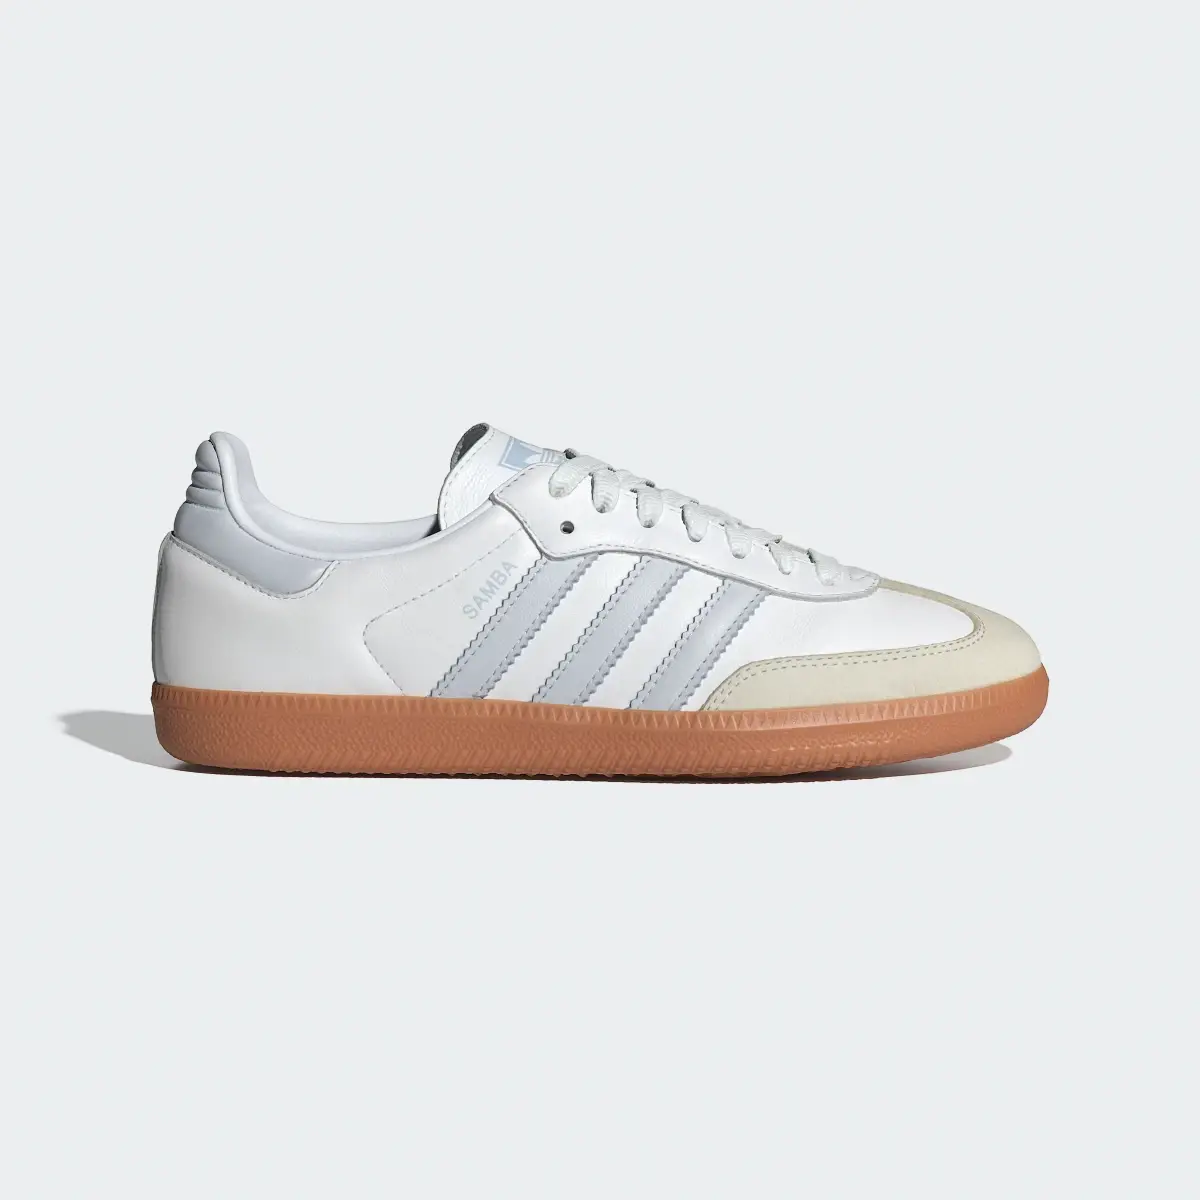 Adidas Samba OG Ayakkabı. 2